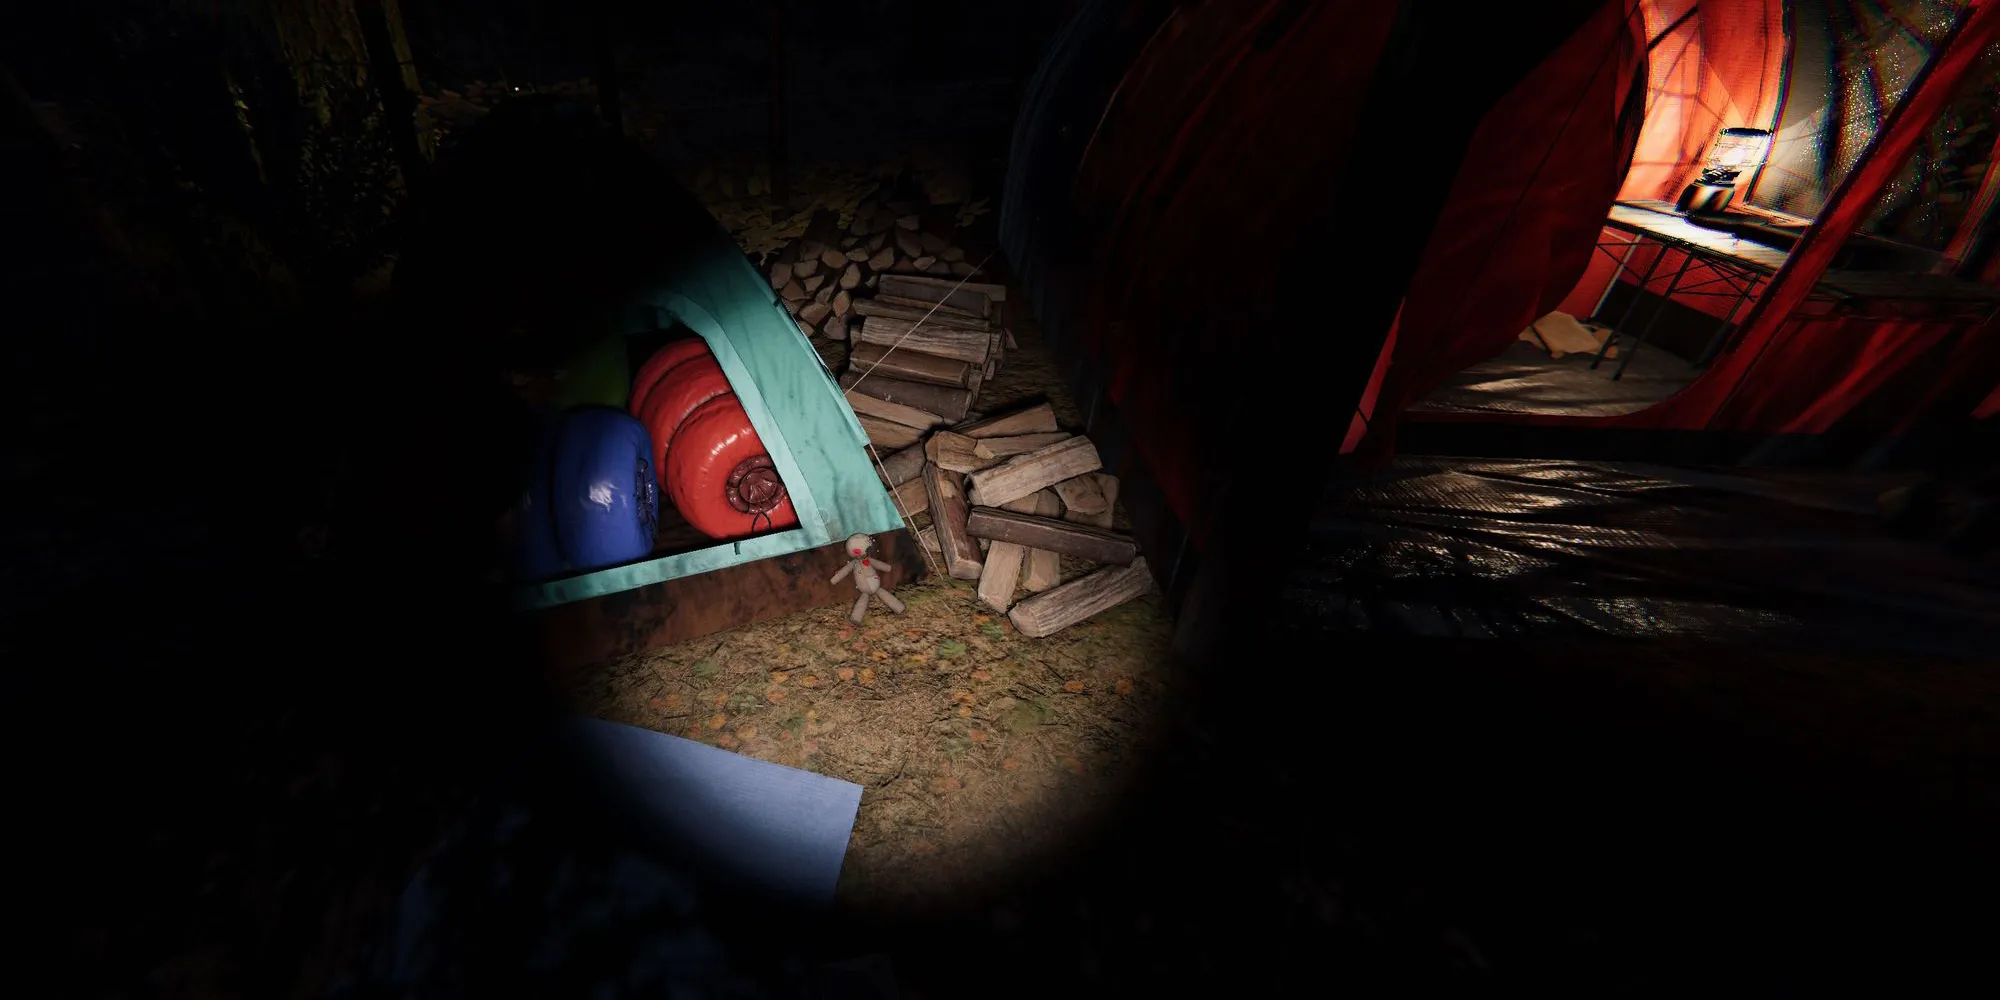 Изображение показывает маленькую куклу вуду в Фазмофобии на земле рядом с синей палаткой, с красной палаткой на заднем плане.